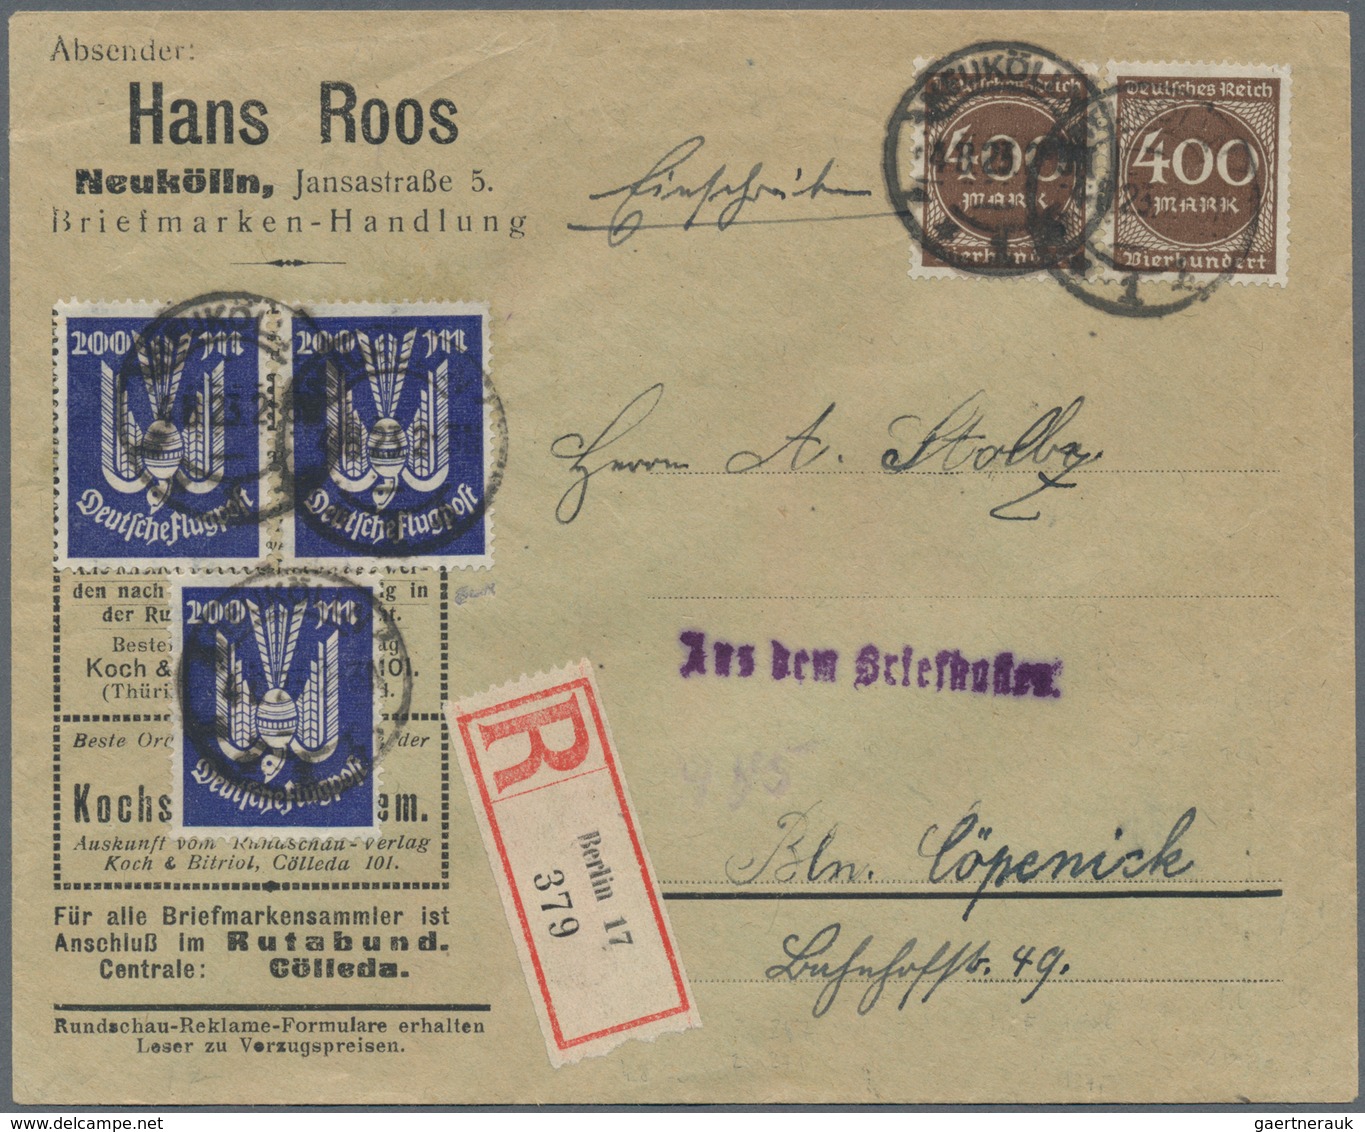 Deutsches Reich - Inflation: 1919/1923, ORTSPOST der INFLATIONS-ZEIT, sehr reichhaltiger Sammlungsbe